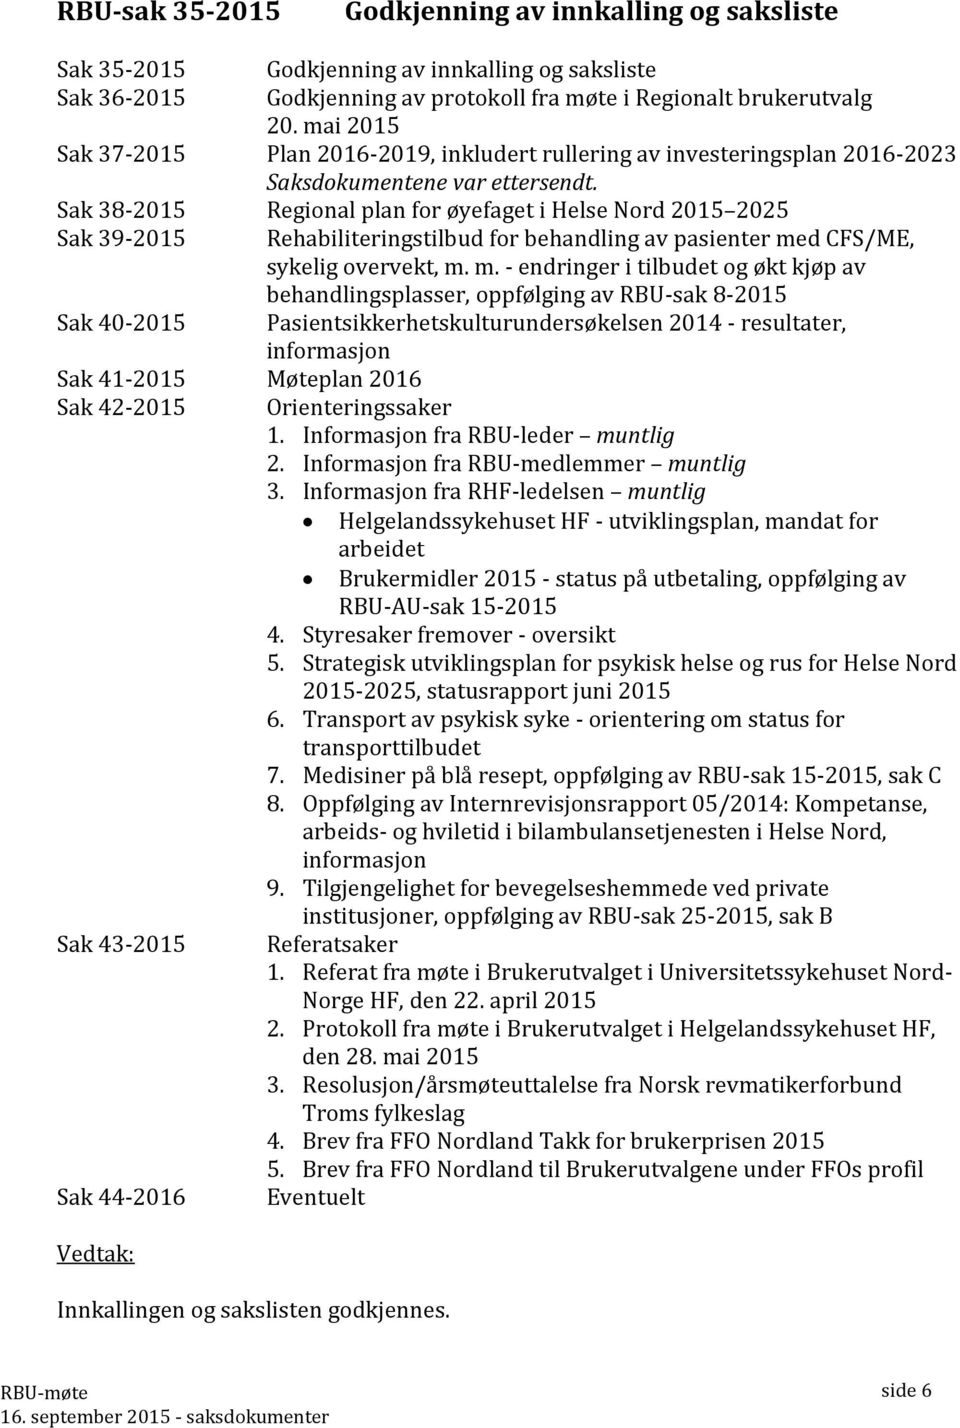 Sak 38-2015 Regional plan for øyefaget i Helse Nord 2015 2025 Sak 39-2015 Sak 40-2015 Sak 41-2015 Møteplan 2016 Sak 42-2015 Sak 43-2015 Sak 44-2016 Vedtak: Rehabiliteringstilbud for behandling av